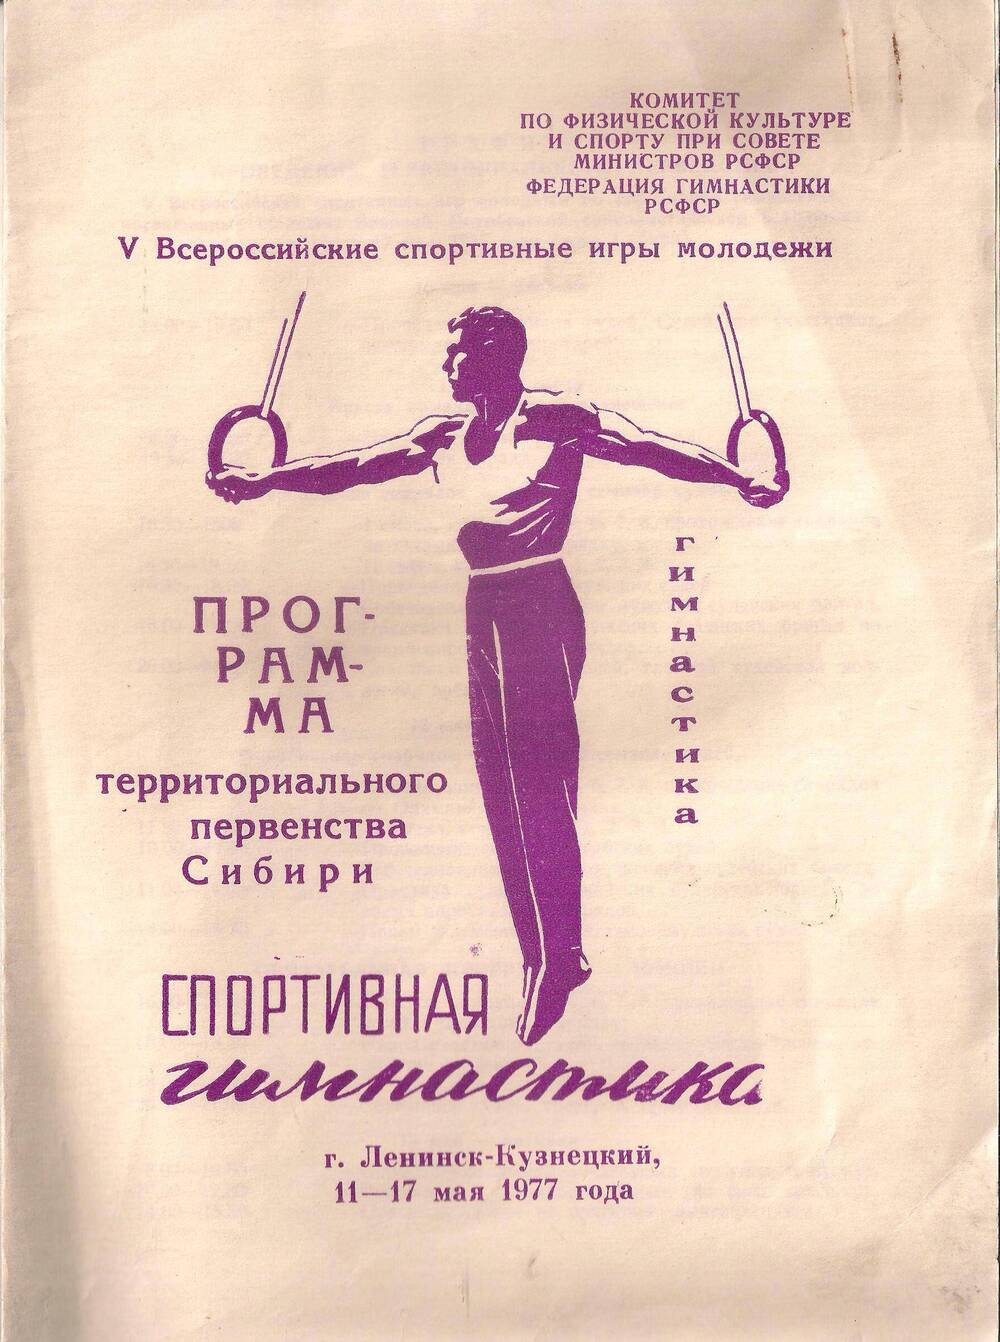 Программа соревнований Спортивная гимнастика